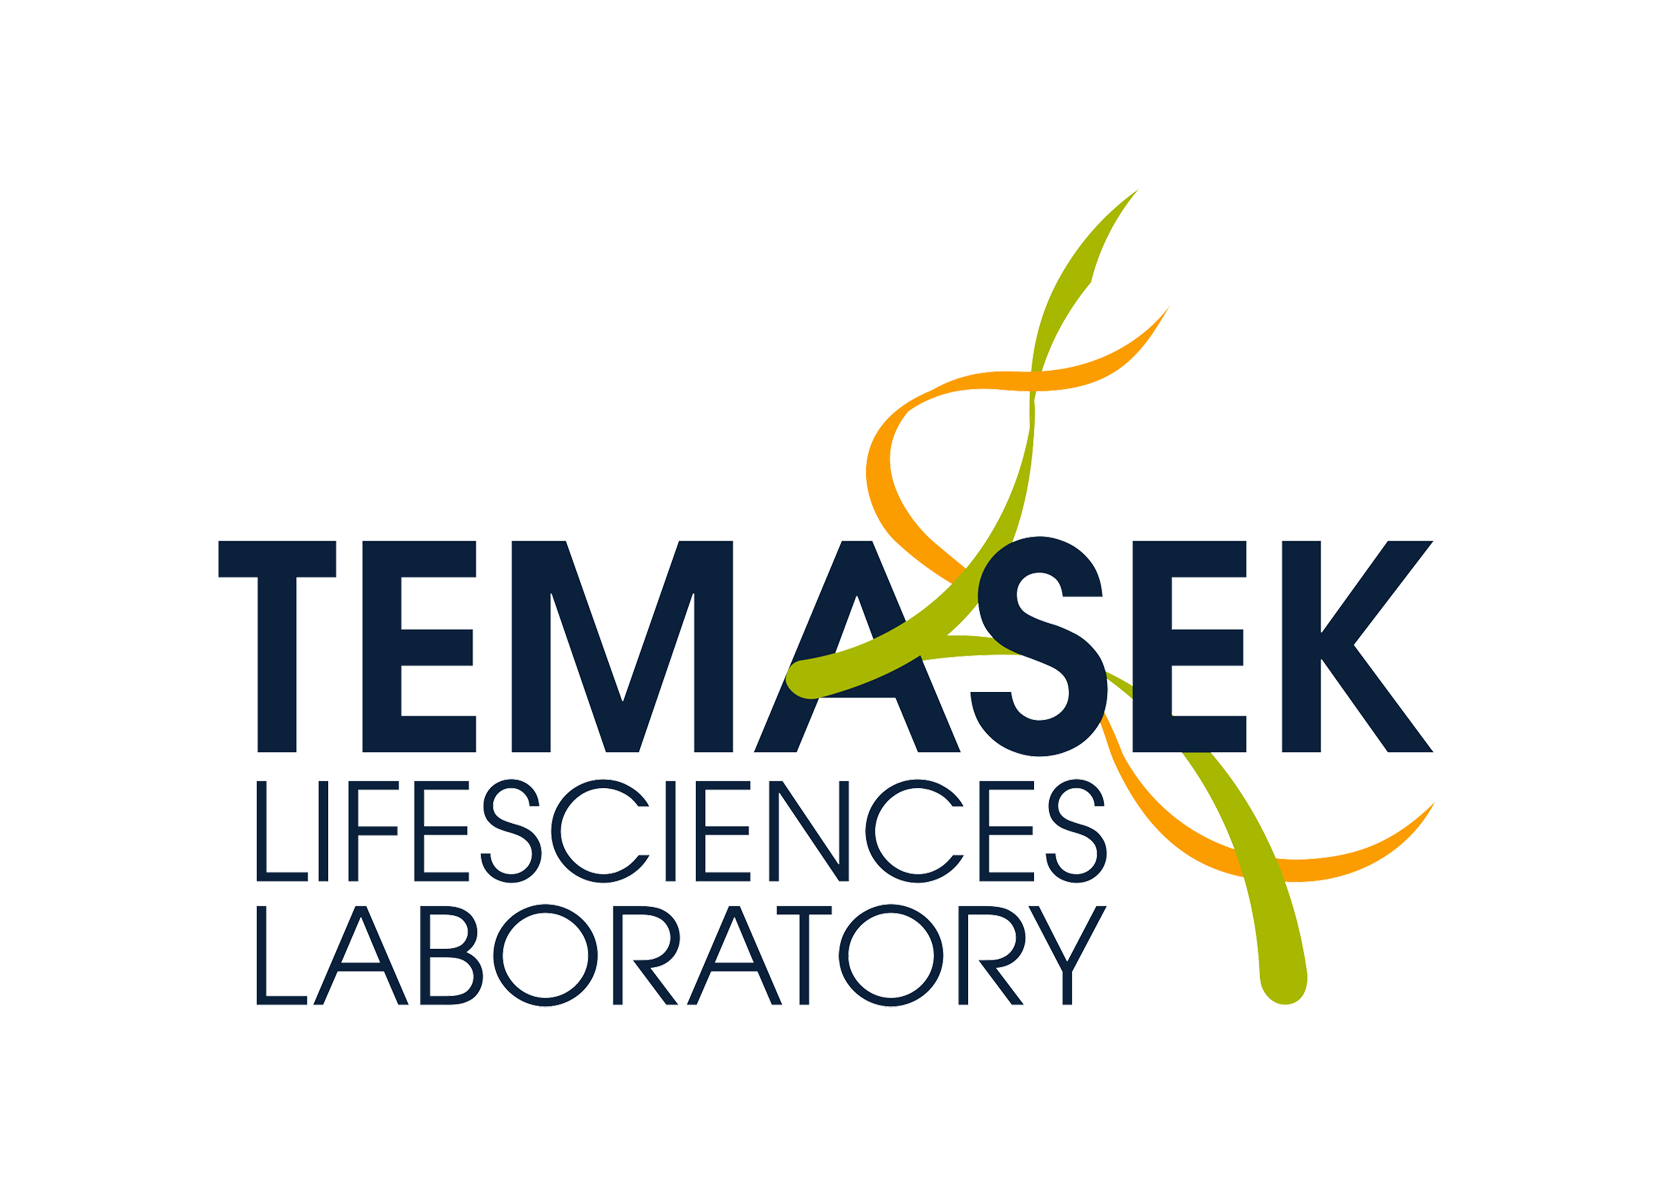 Temasek Lifesciences Laboratory